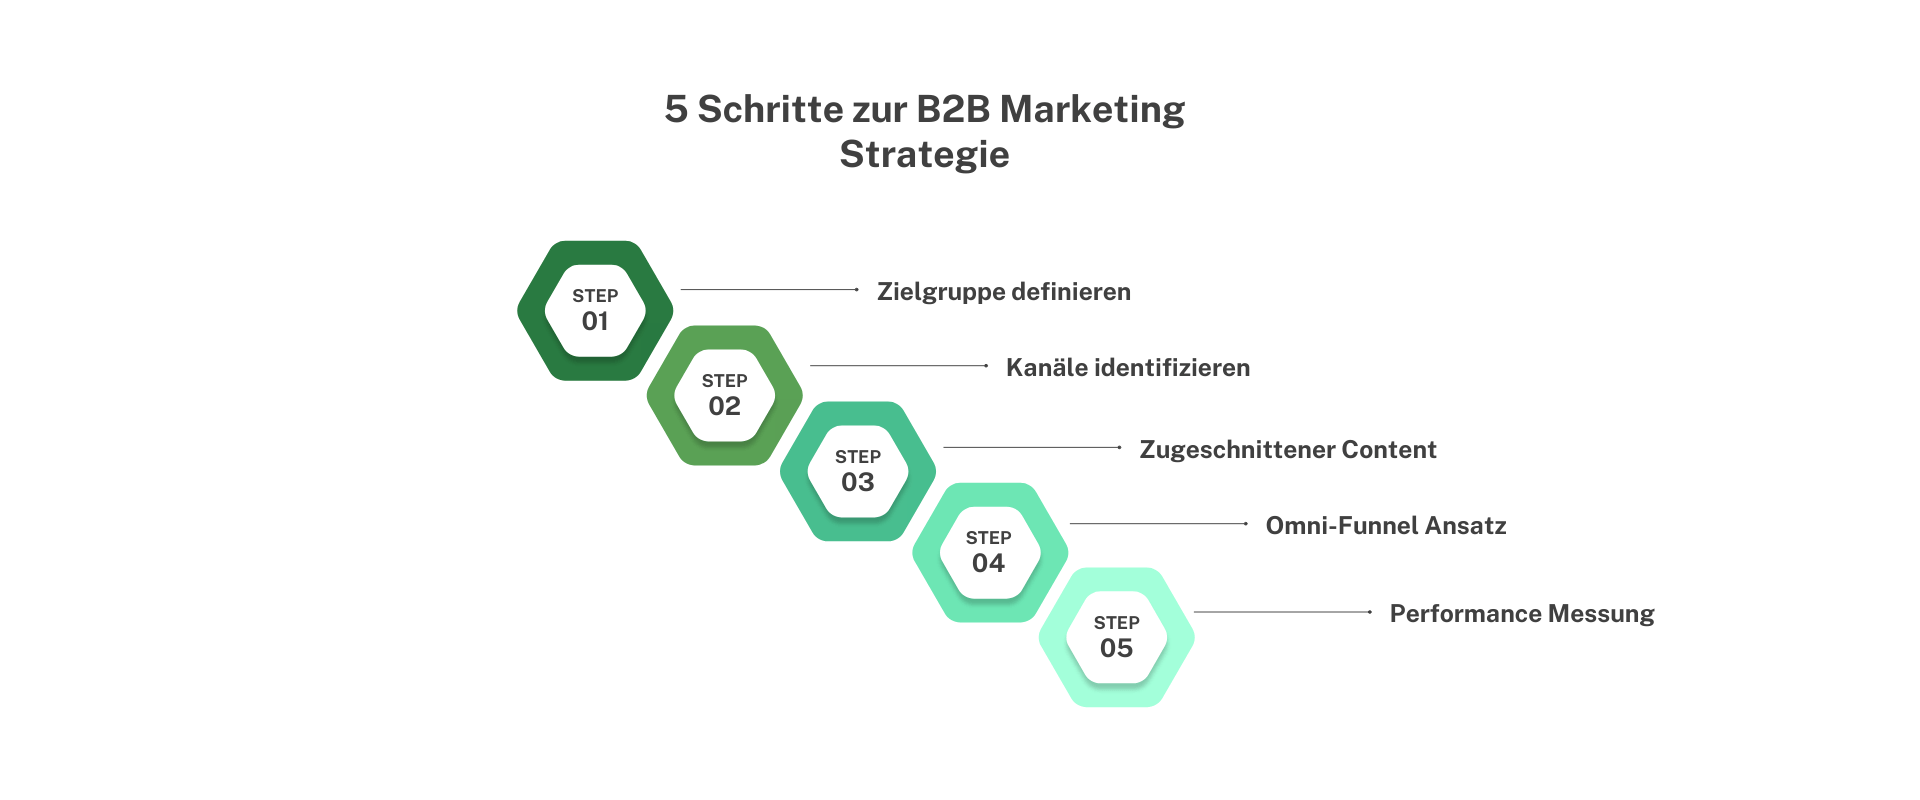 5 Schritte zur B2B Marketing Strategie